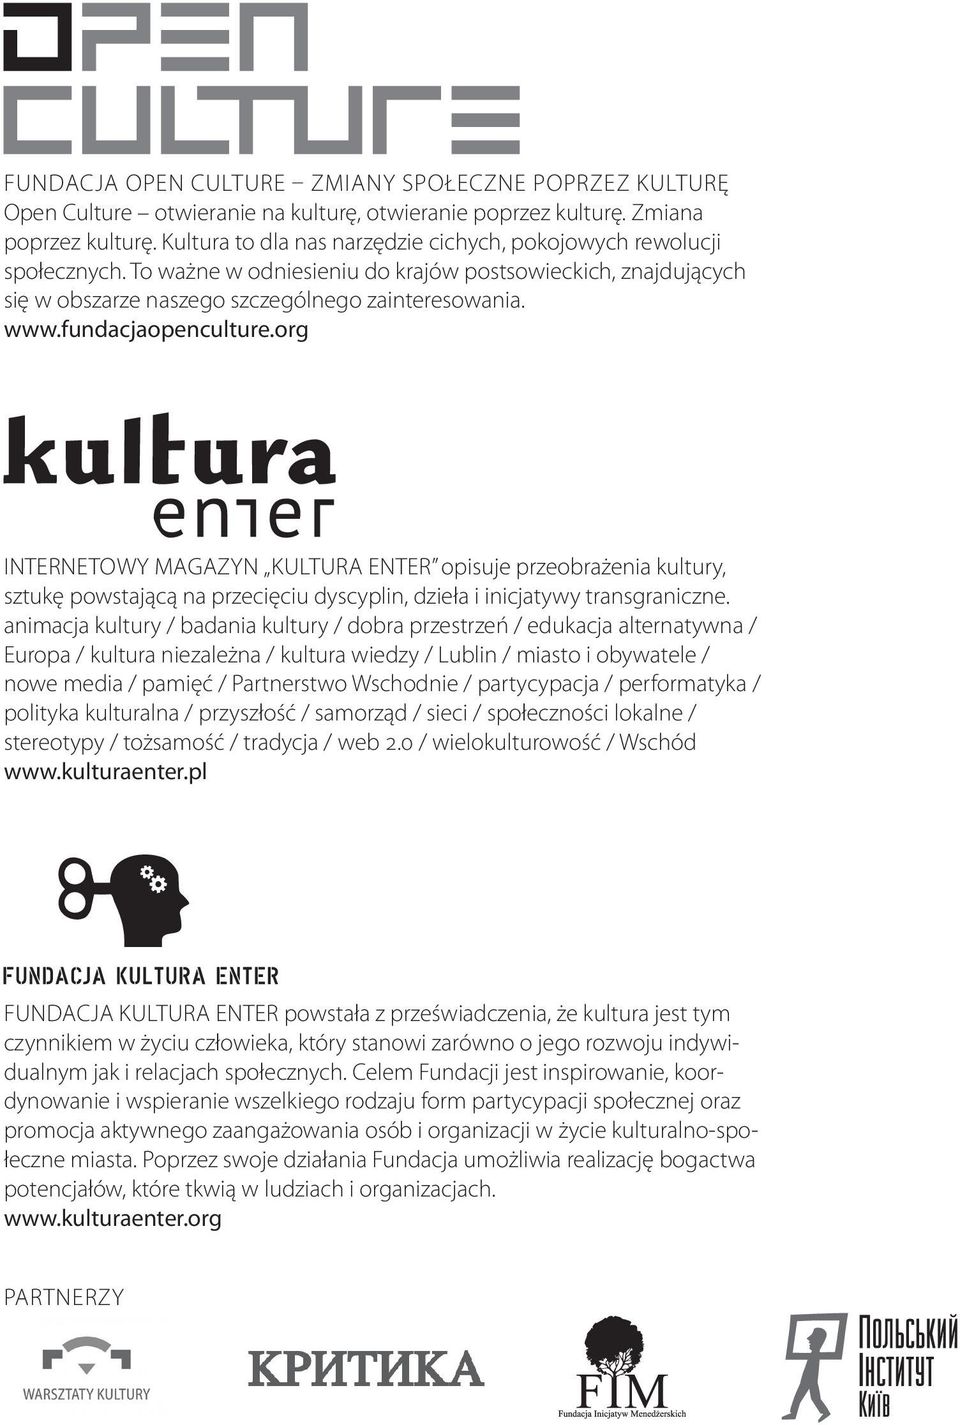 fundacjaopenculture.org Internetowy magazyn Kultura Enter opisuje przeobrażenia kultury, sztukę powstającą na przecięciu dyscyplin, dzieła i inicjatywy transgraniczne.